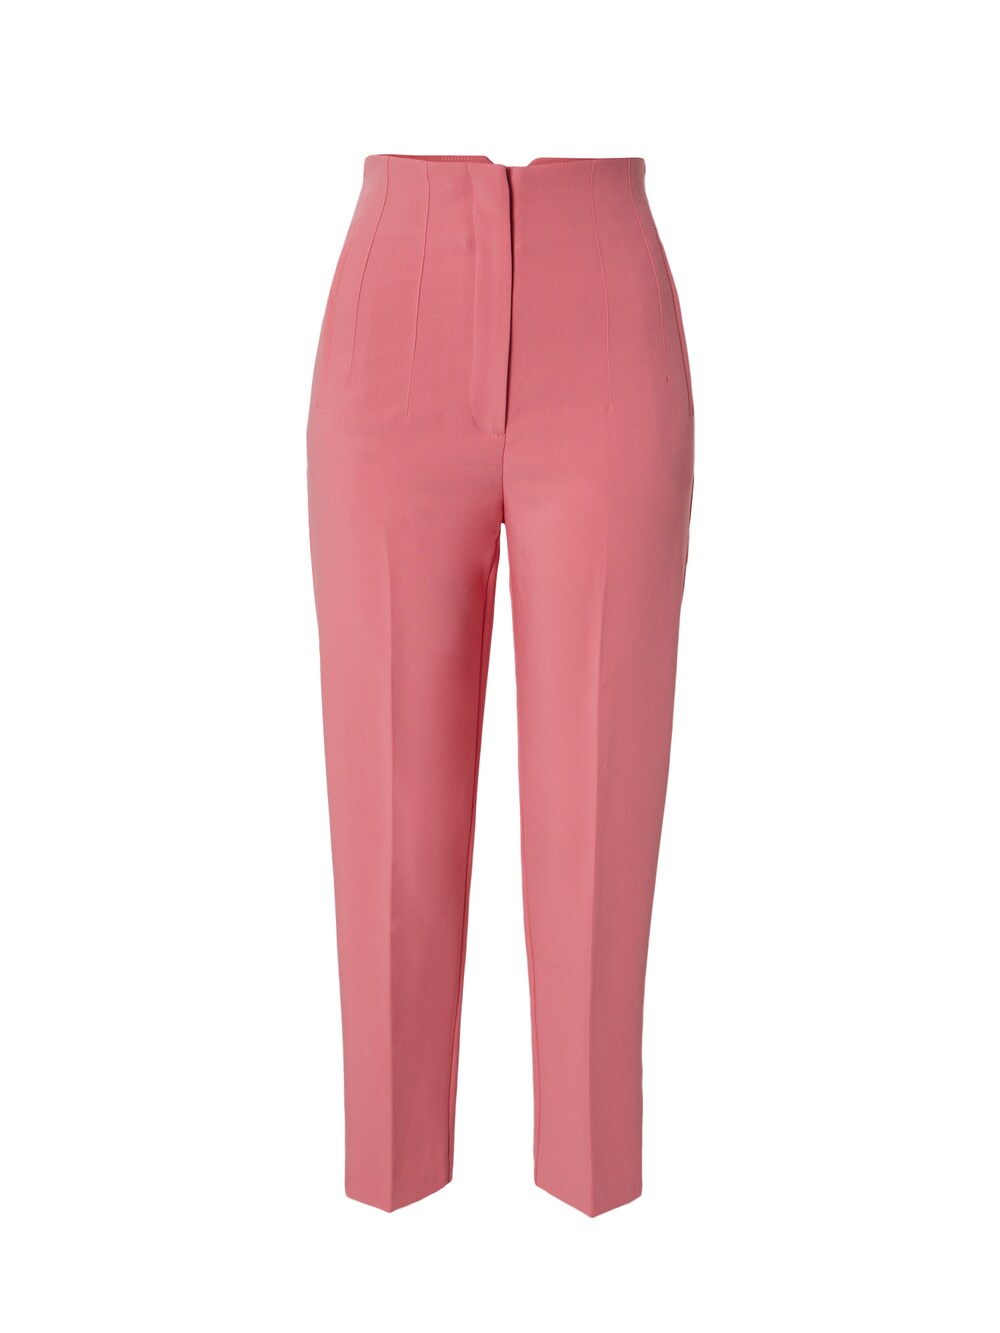 Обычные плиссированные брюки Edited Charlotta, розовый